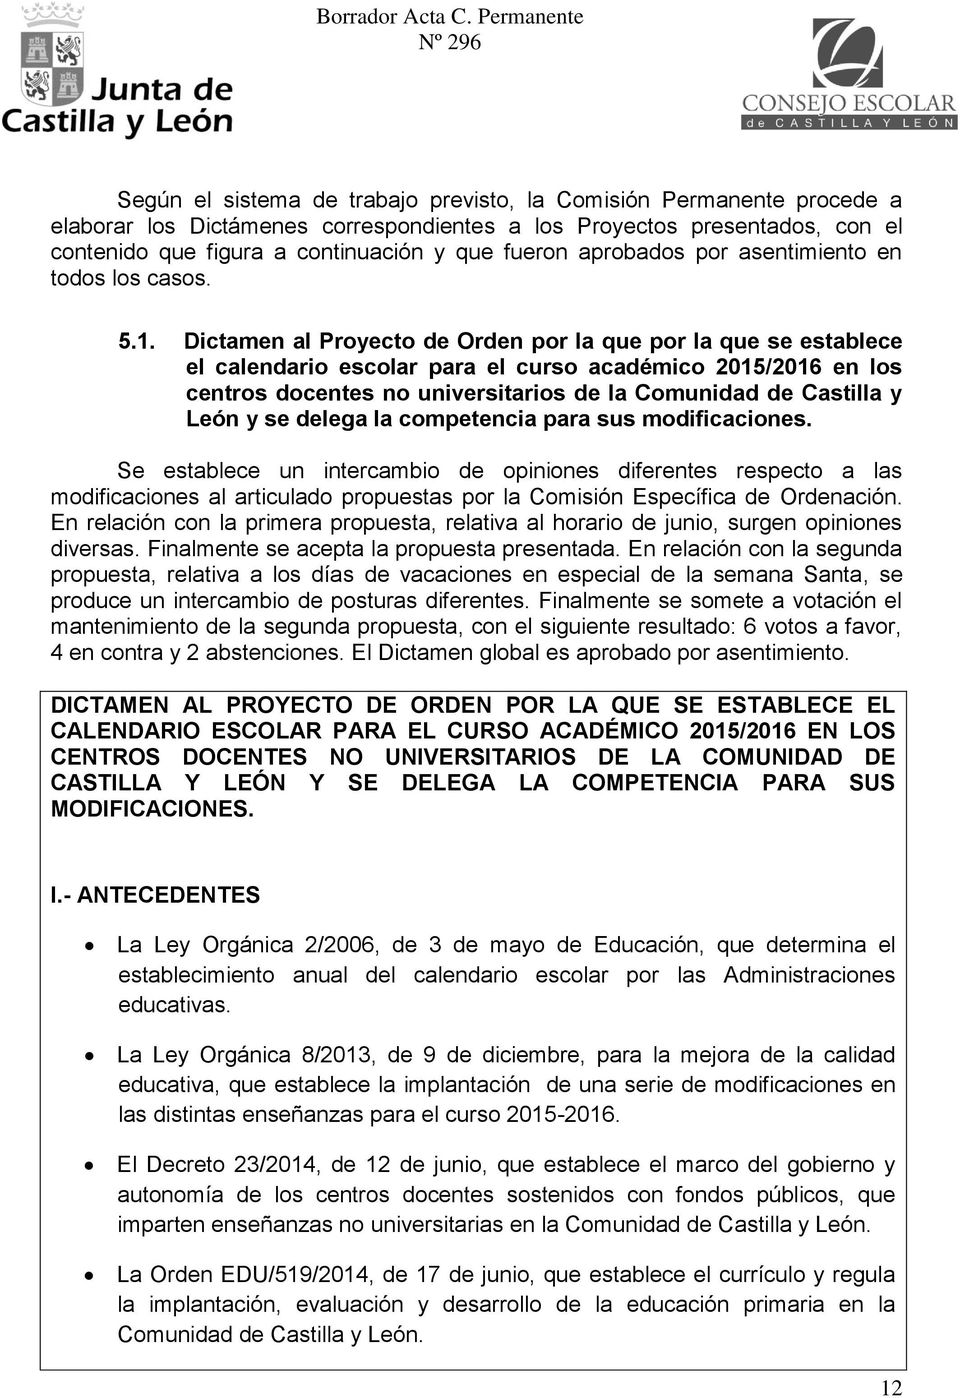 Dictamen al Proyecto de Orden por la que por la que se establece el calendario escolar para el curso académico 2015/2016 en los centros docentes no universitarios de la Comunidad de Castilla y León y